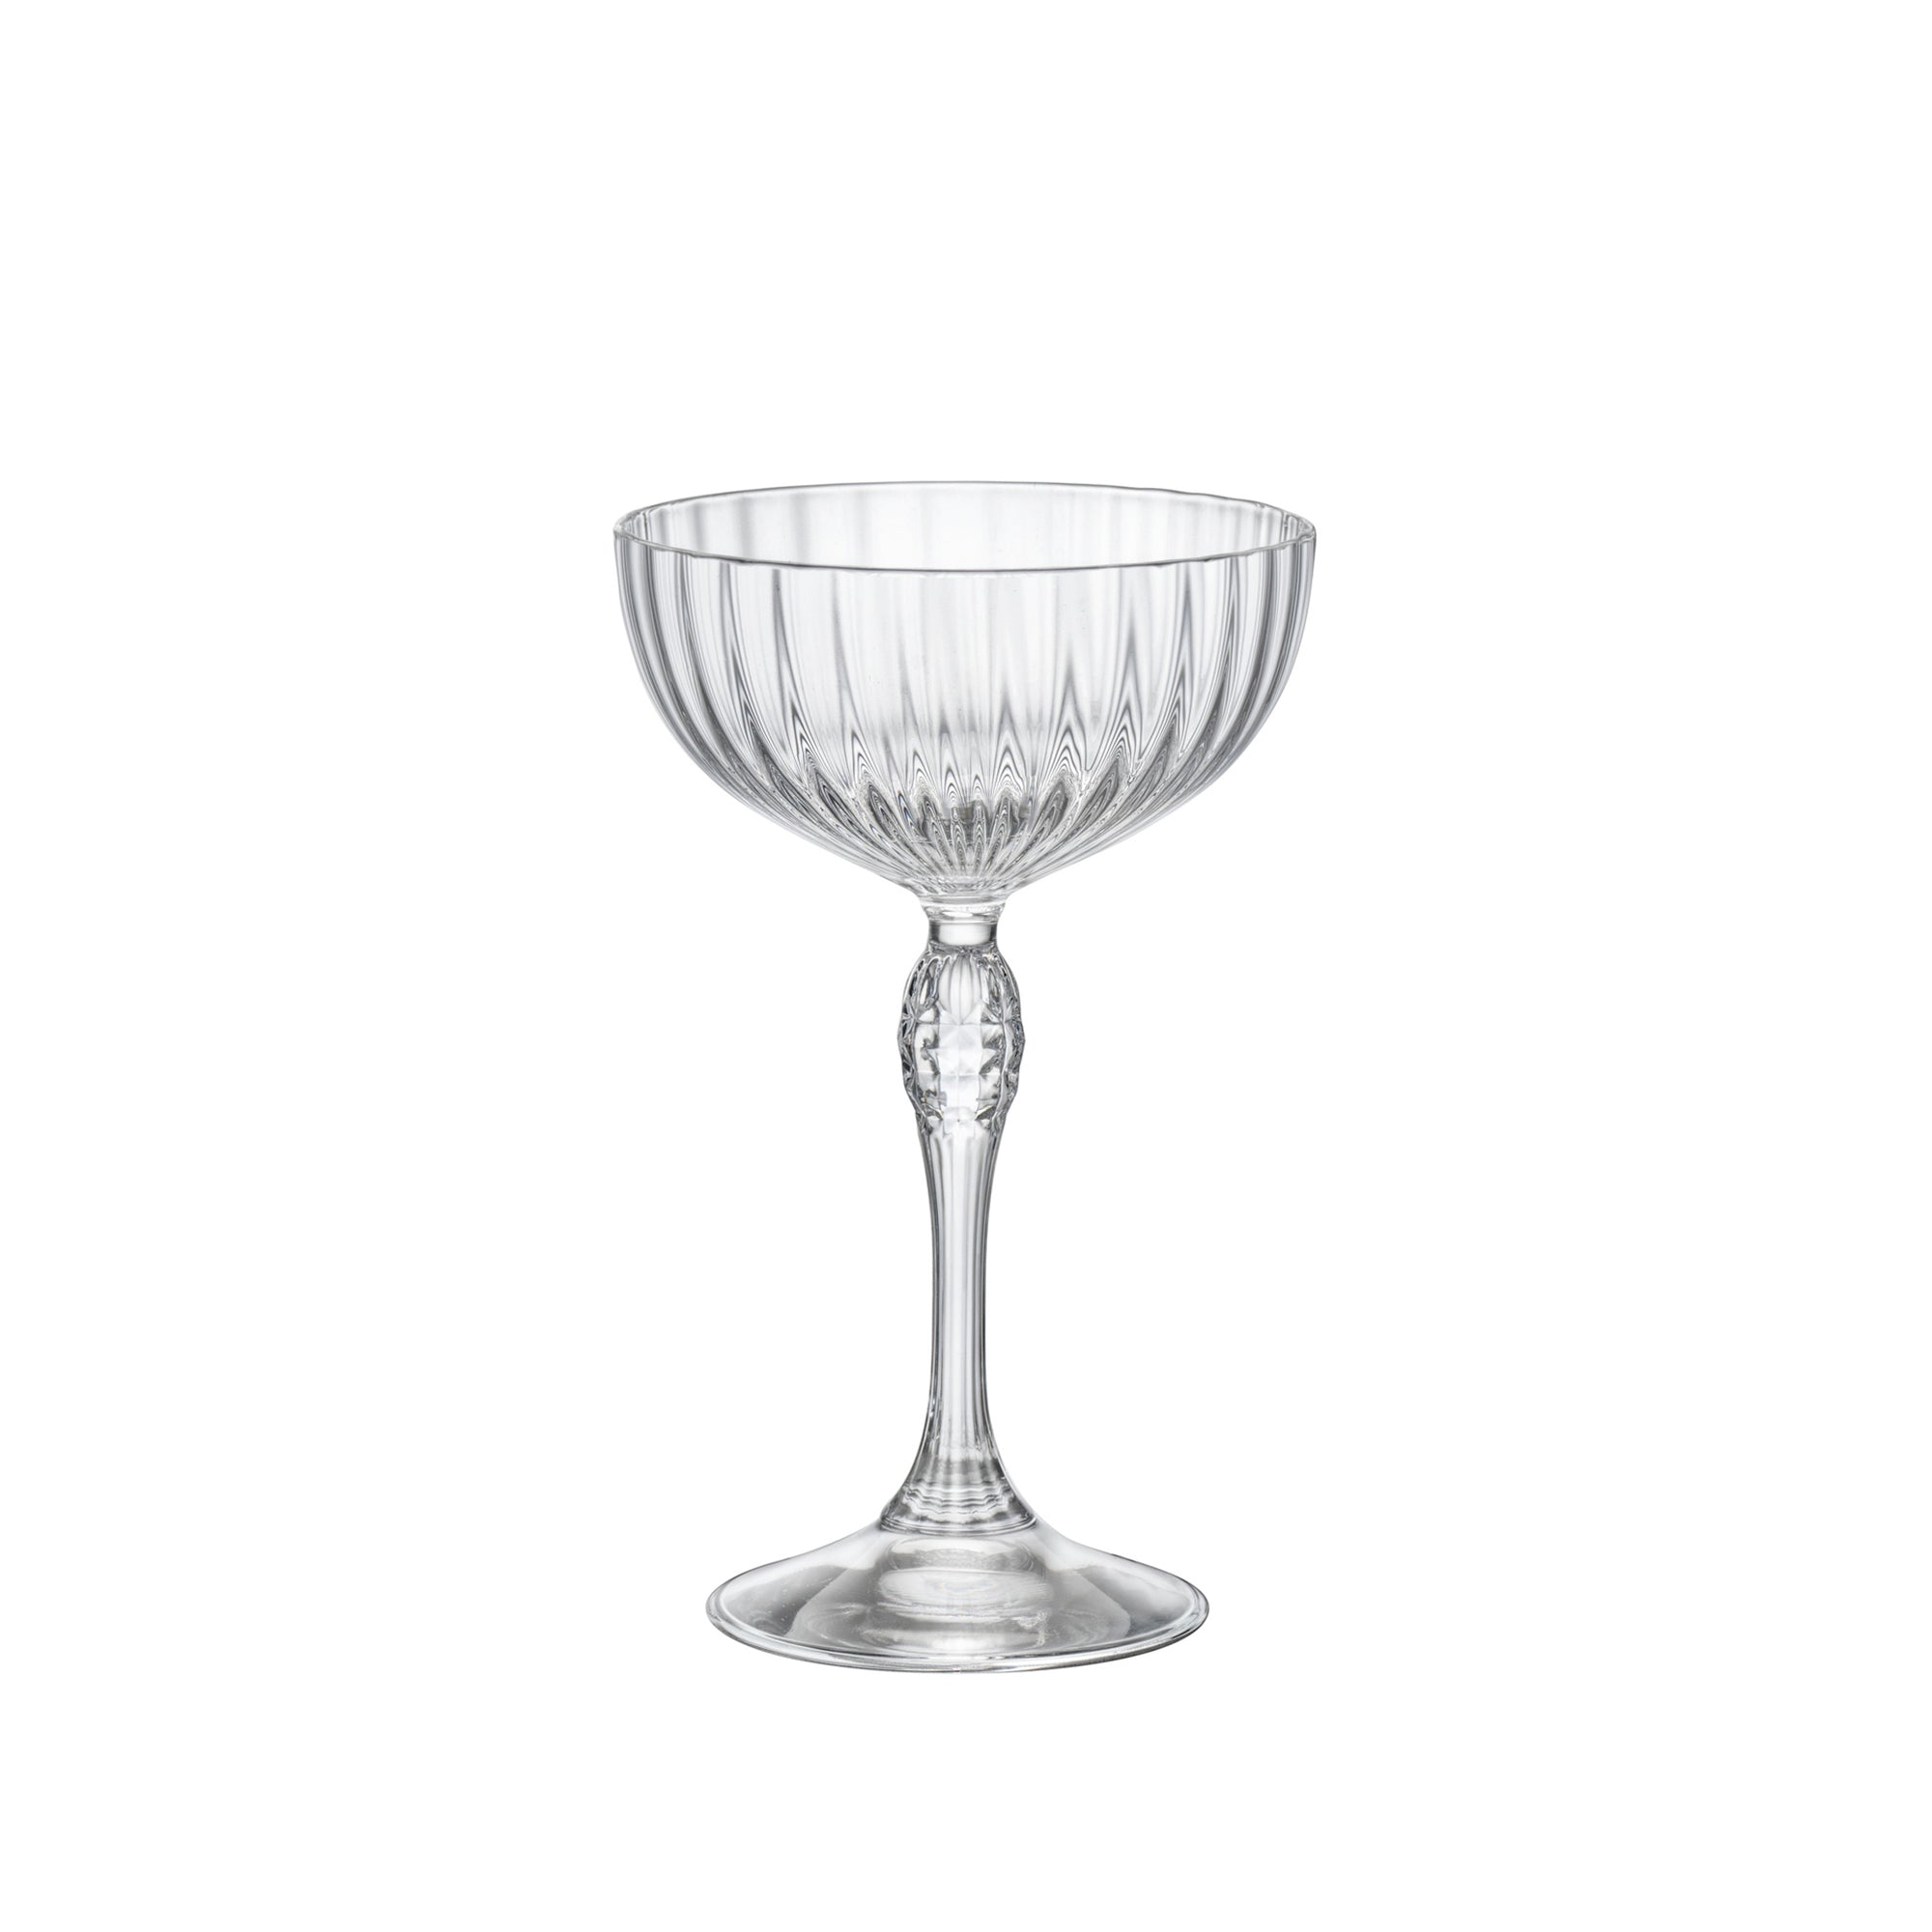 Mixology 7.5 oz Coupe Cocktail Glasses (Set Of 4)– Luigi Bormioli